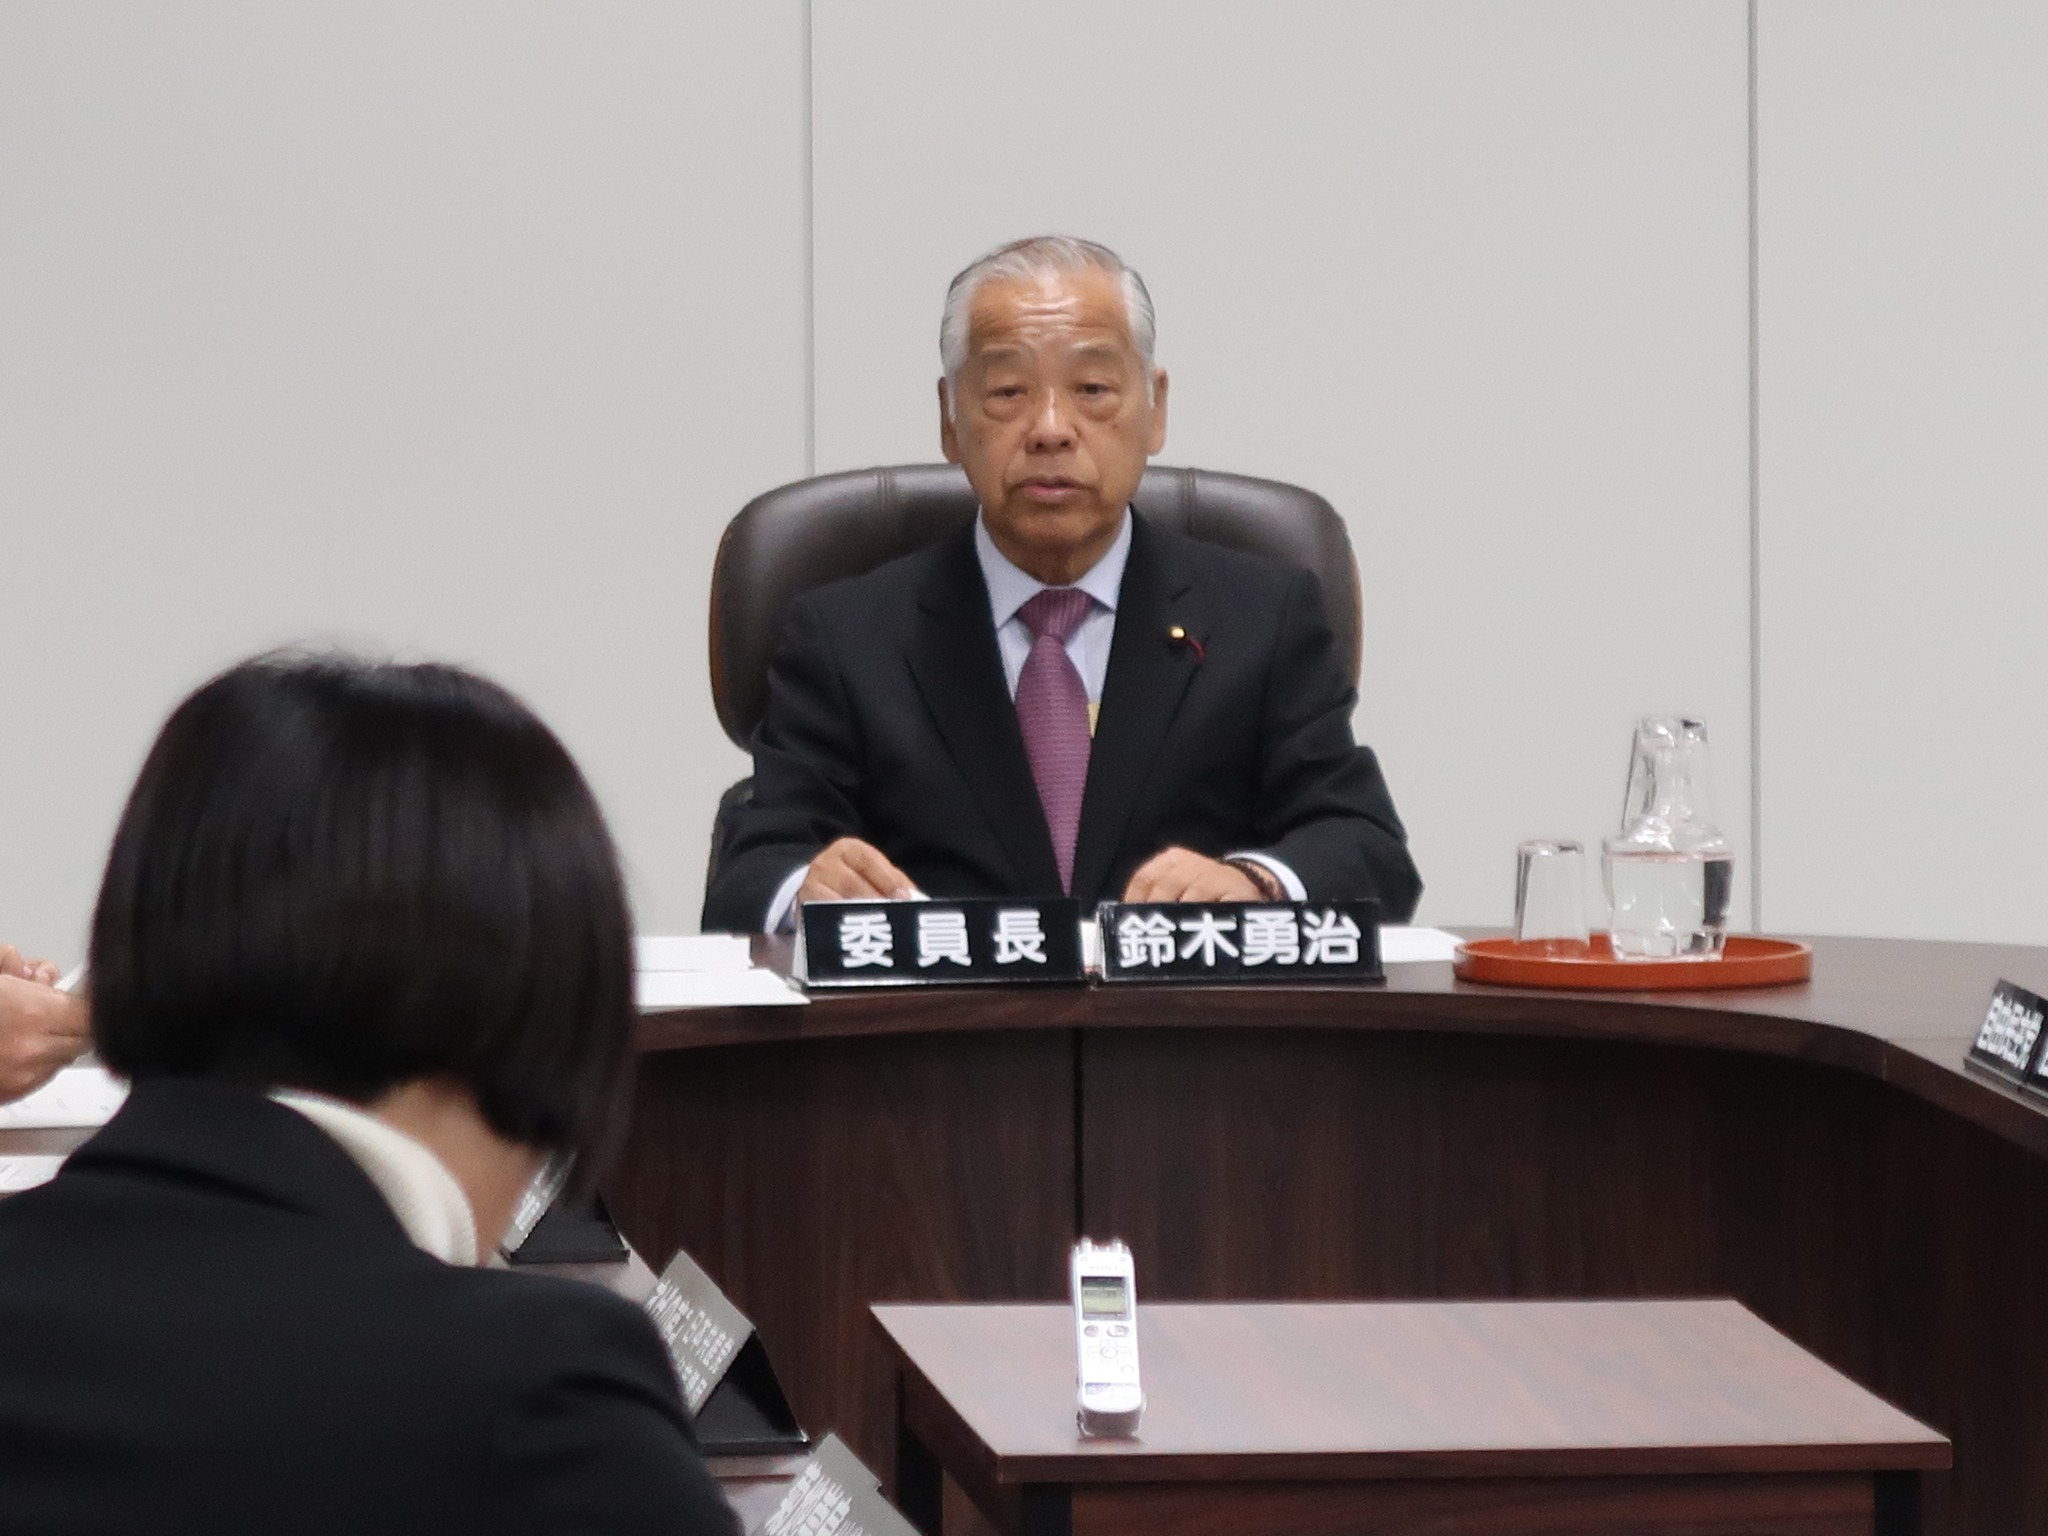 令和５年１２月６日仙台市議会令和５年第４回定例会が開催されるにあたり、議事運営の協議のために議会運営委員会が開催されました。今期は議会運営委員長を担っております。